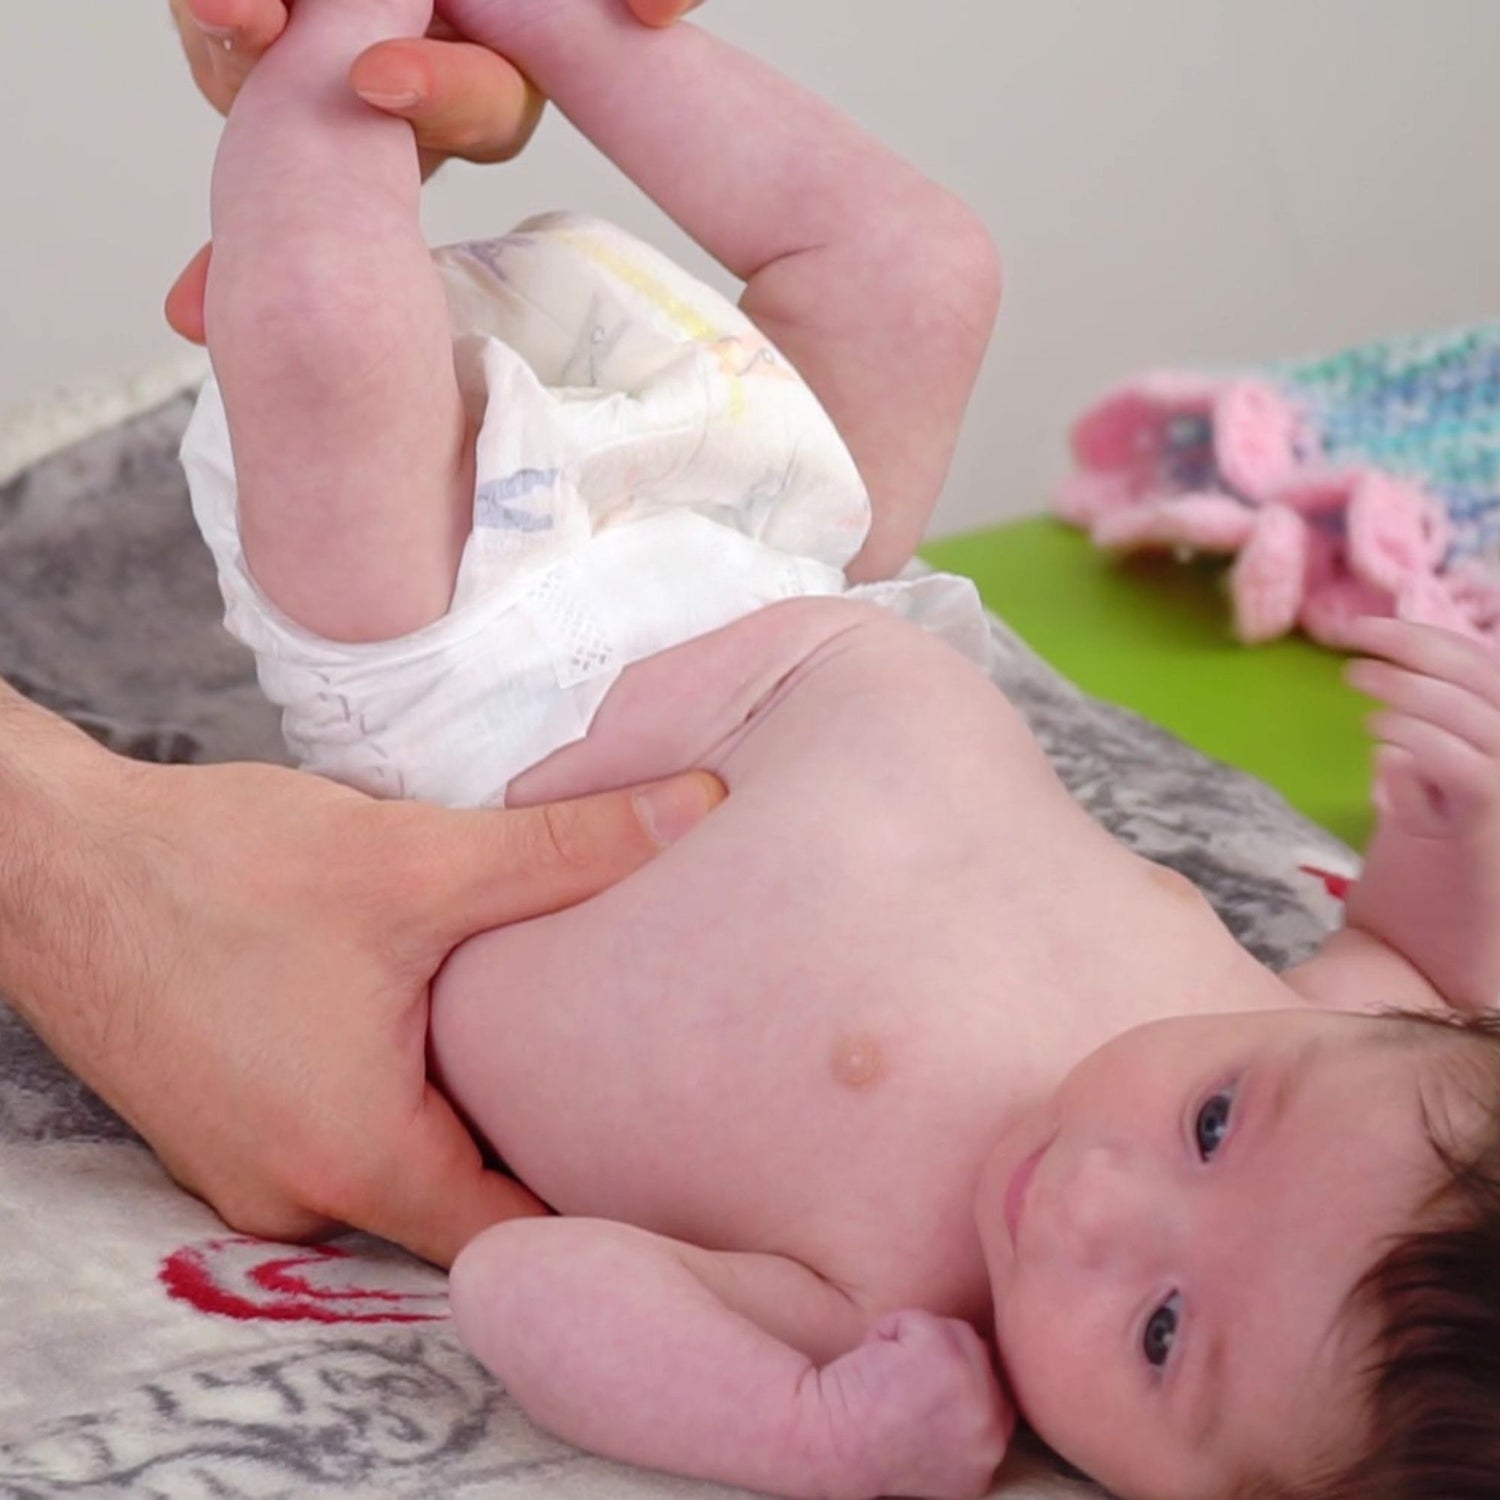 osteo-massage alla pancia - massaggio alla pancia del neonato per curare coliche gassose, la stipsi, la dischezia, il reflusso e i rigurgiti del neonato